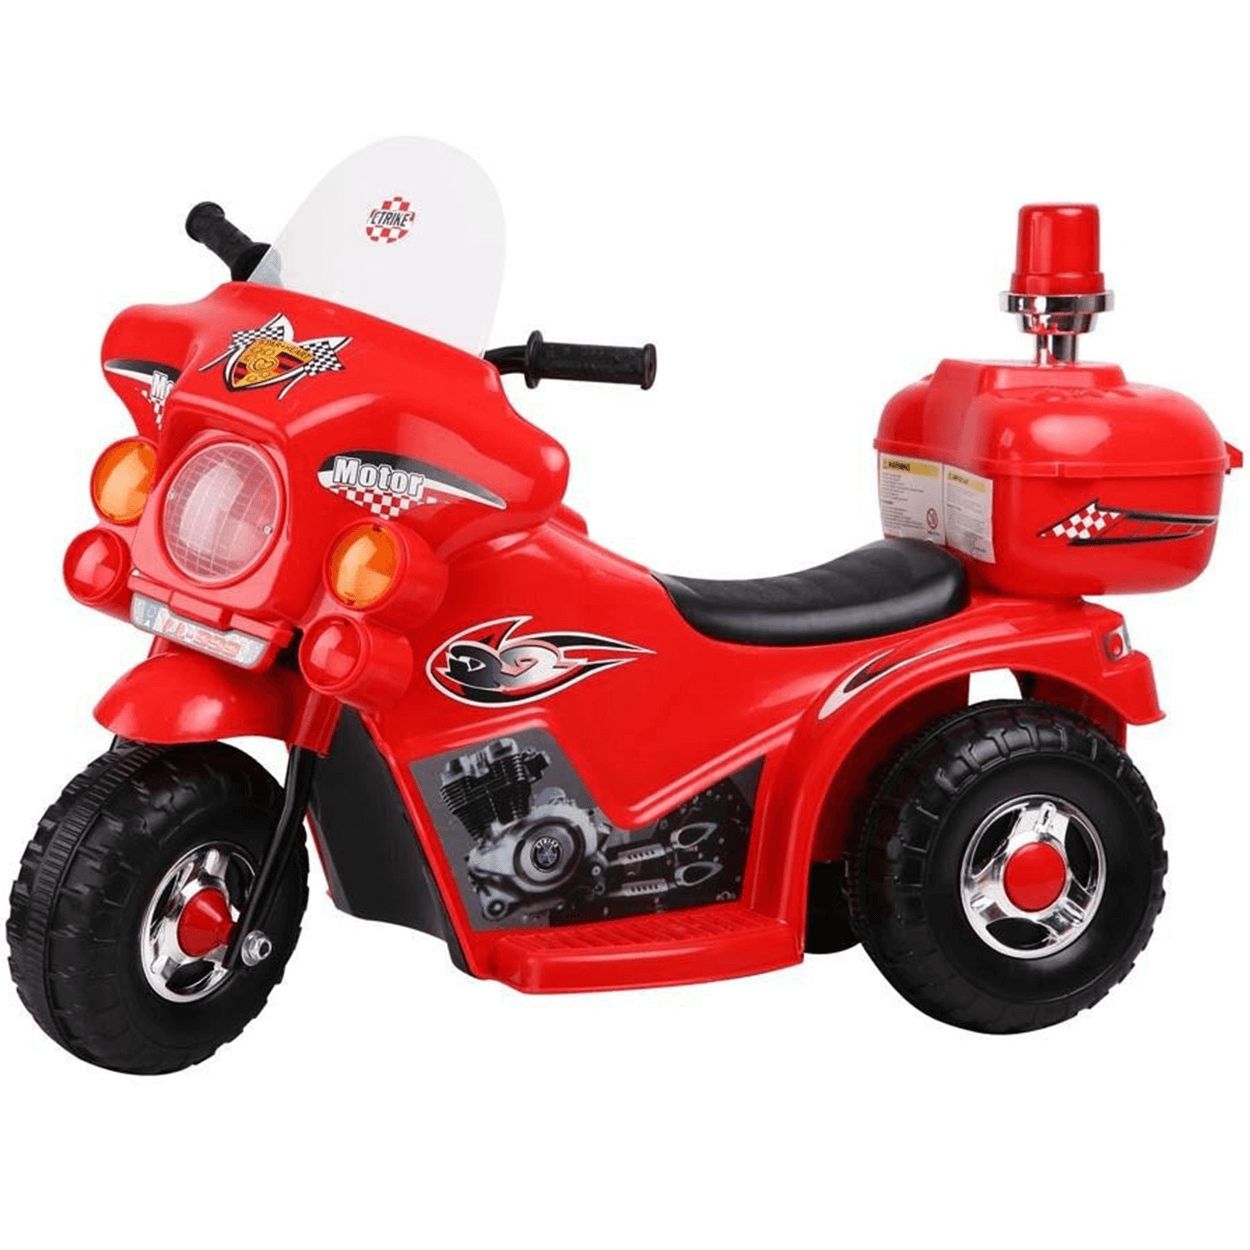 Mini Moto Elétrica Triciclo Criança Infantil Bateria Policia